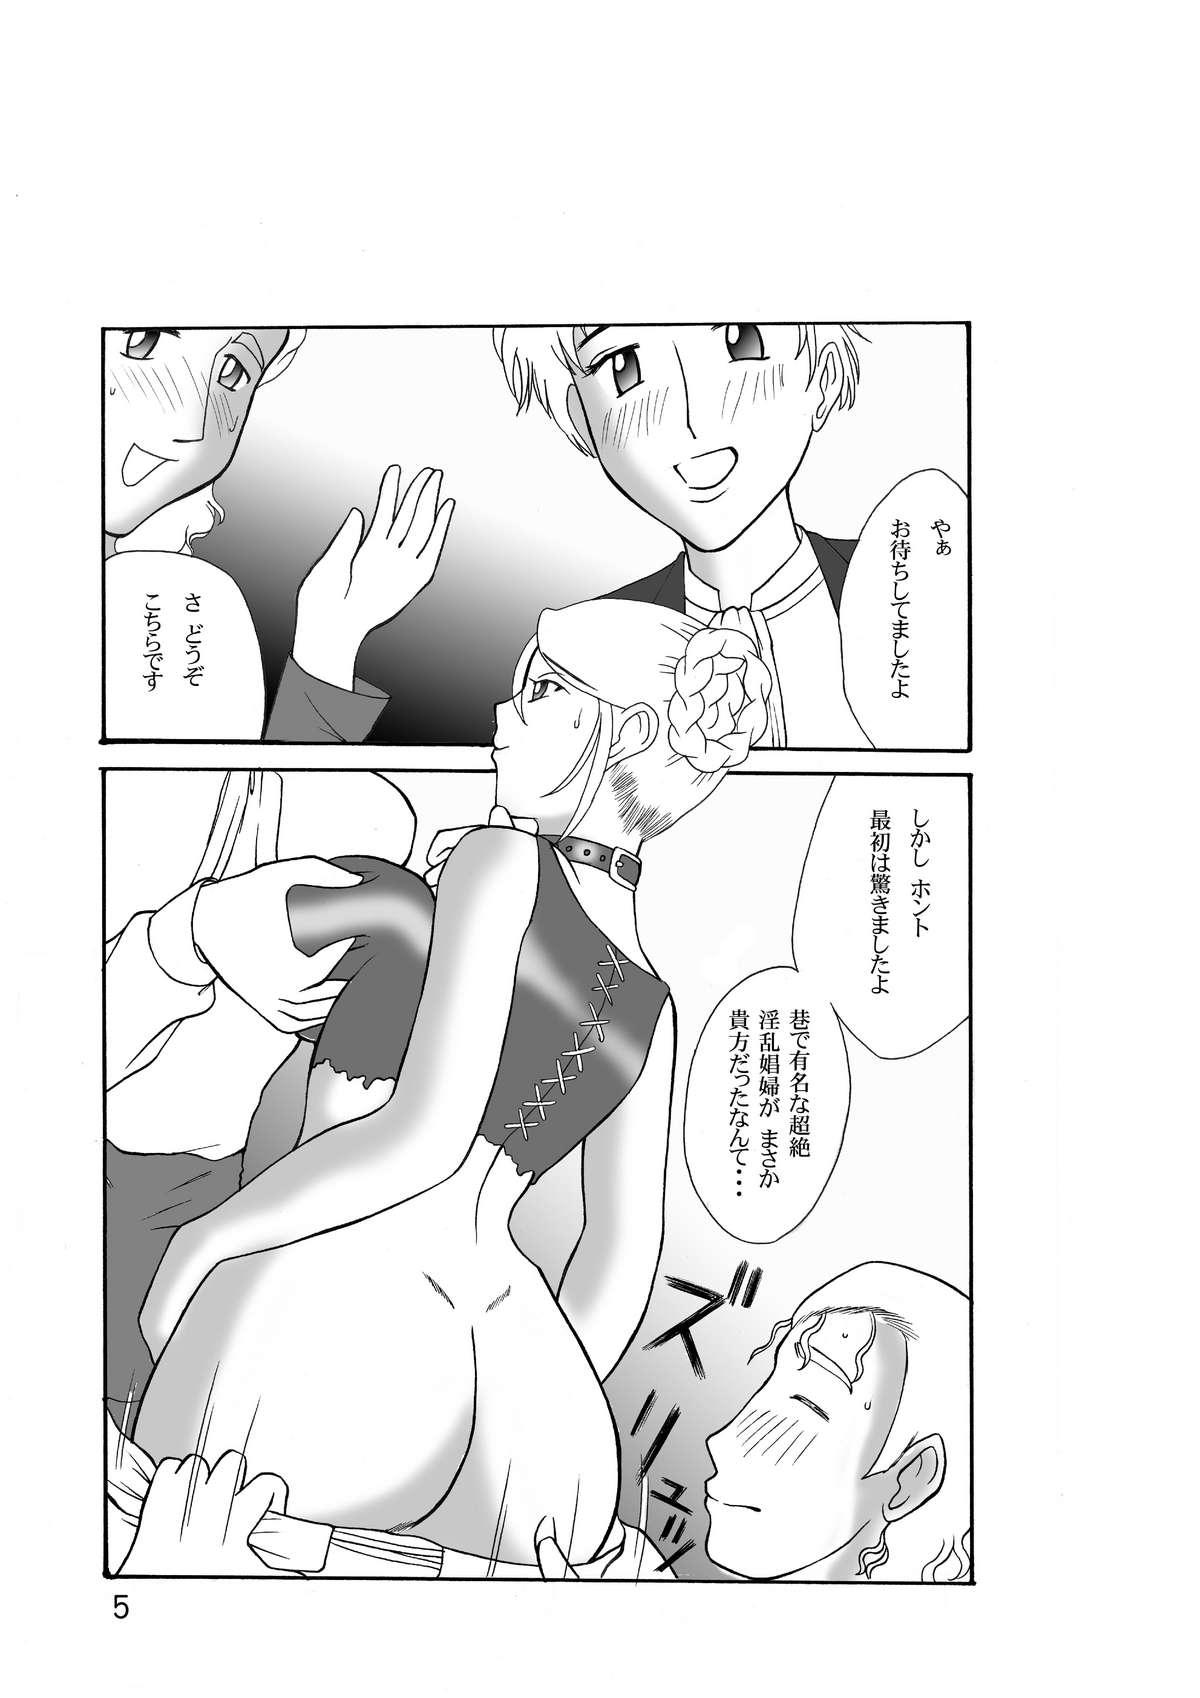 Gloryholes Onee-san wa Yoru Aegu - Ashita no nadja Transvestite - Page 5